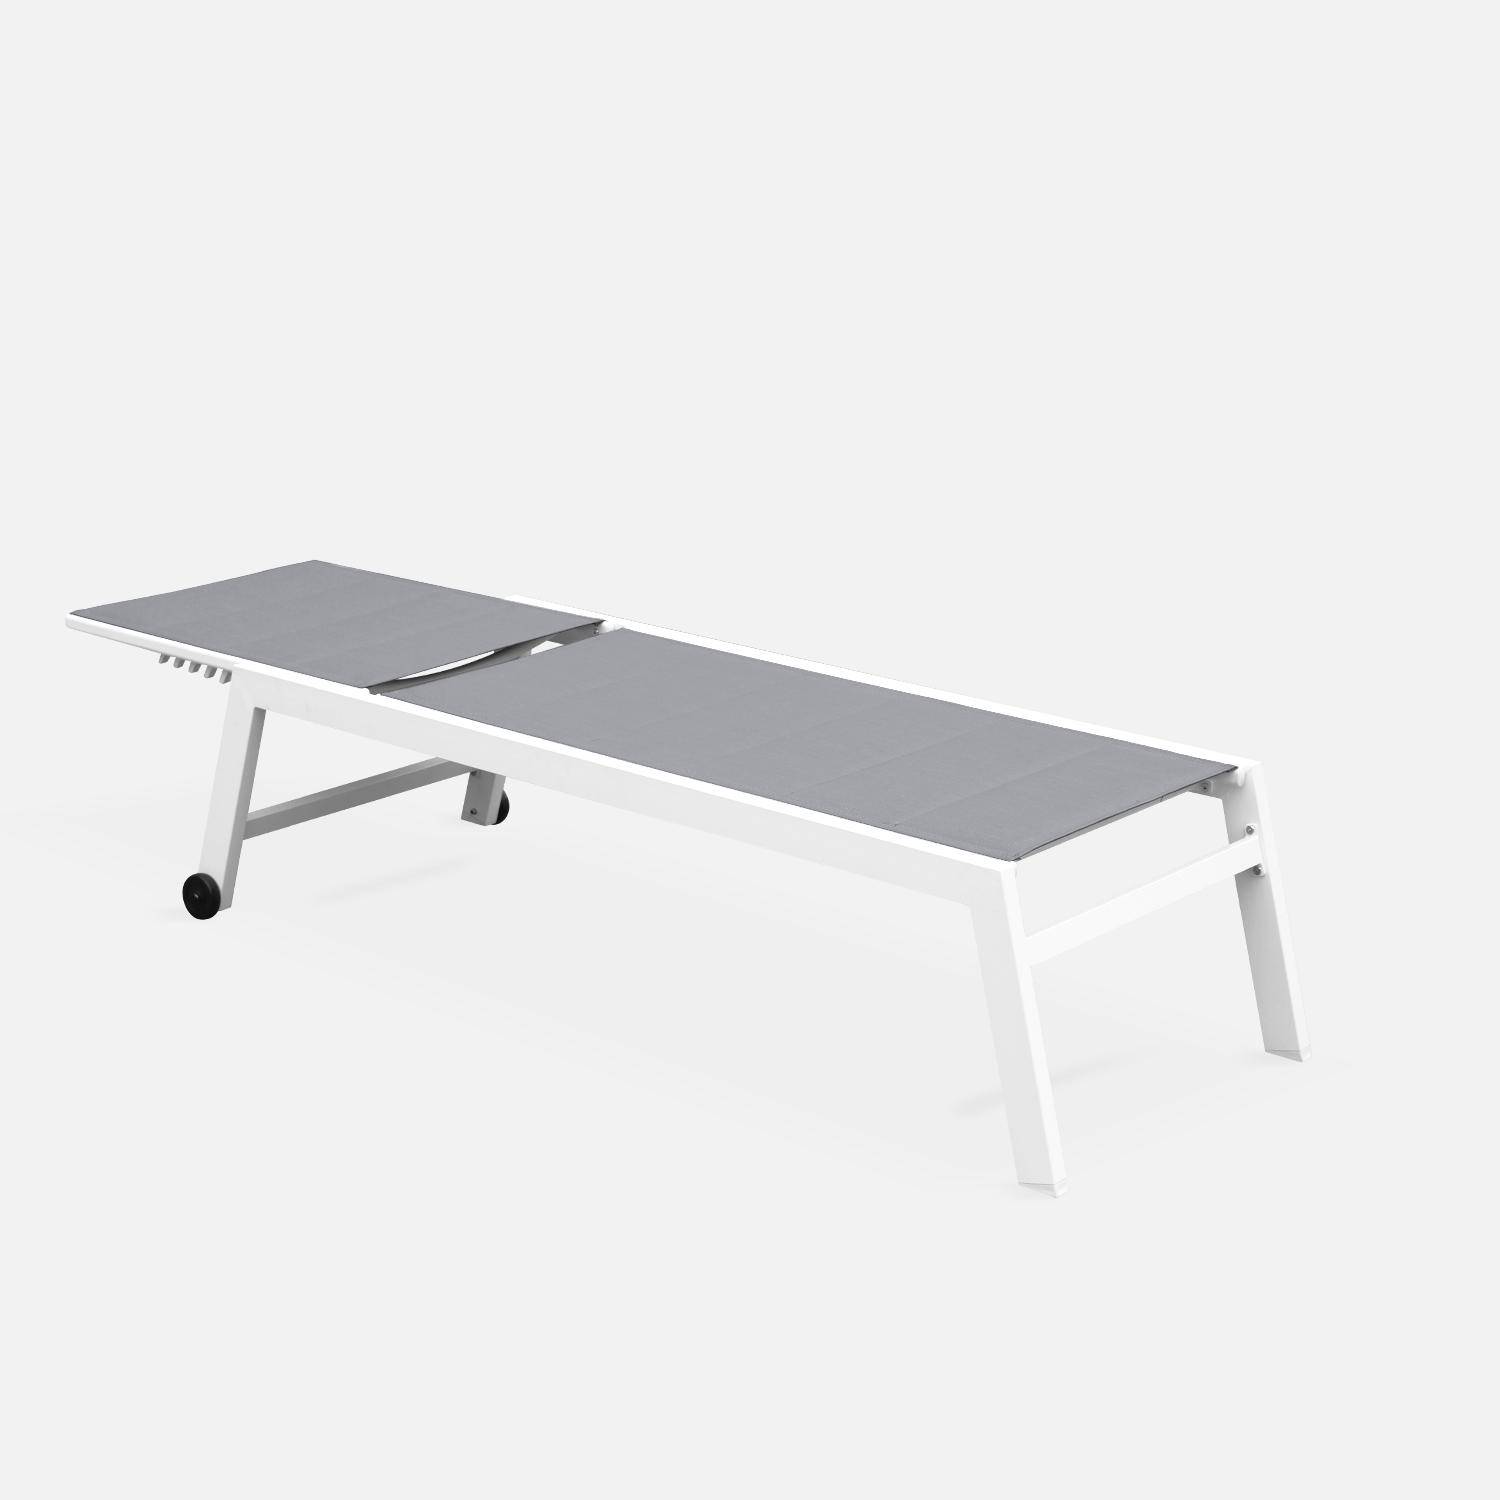 Tumbona de aluminio blanco y textileno gris, reclinable 6 posiciones | Solis,sweeek,Photo3